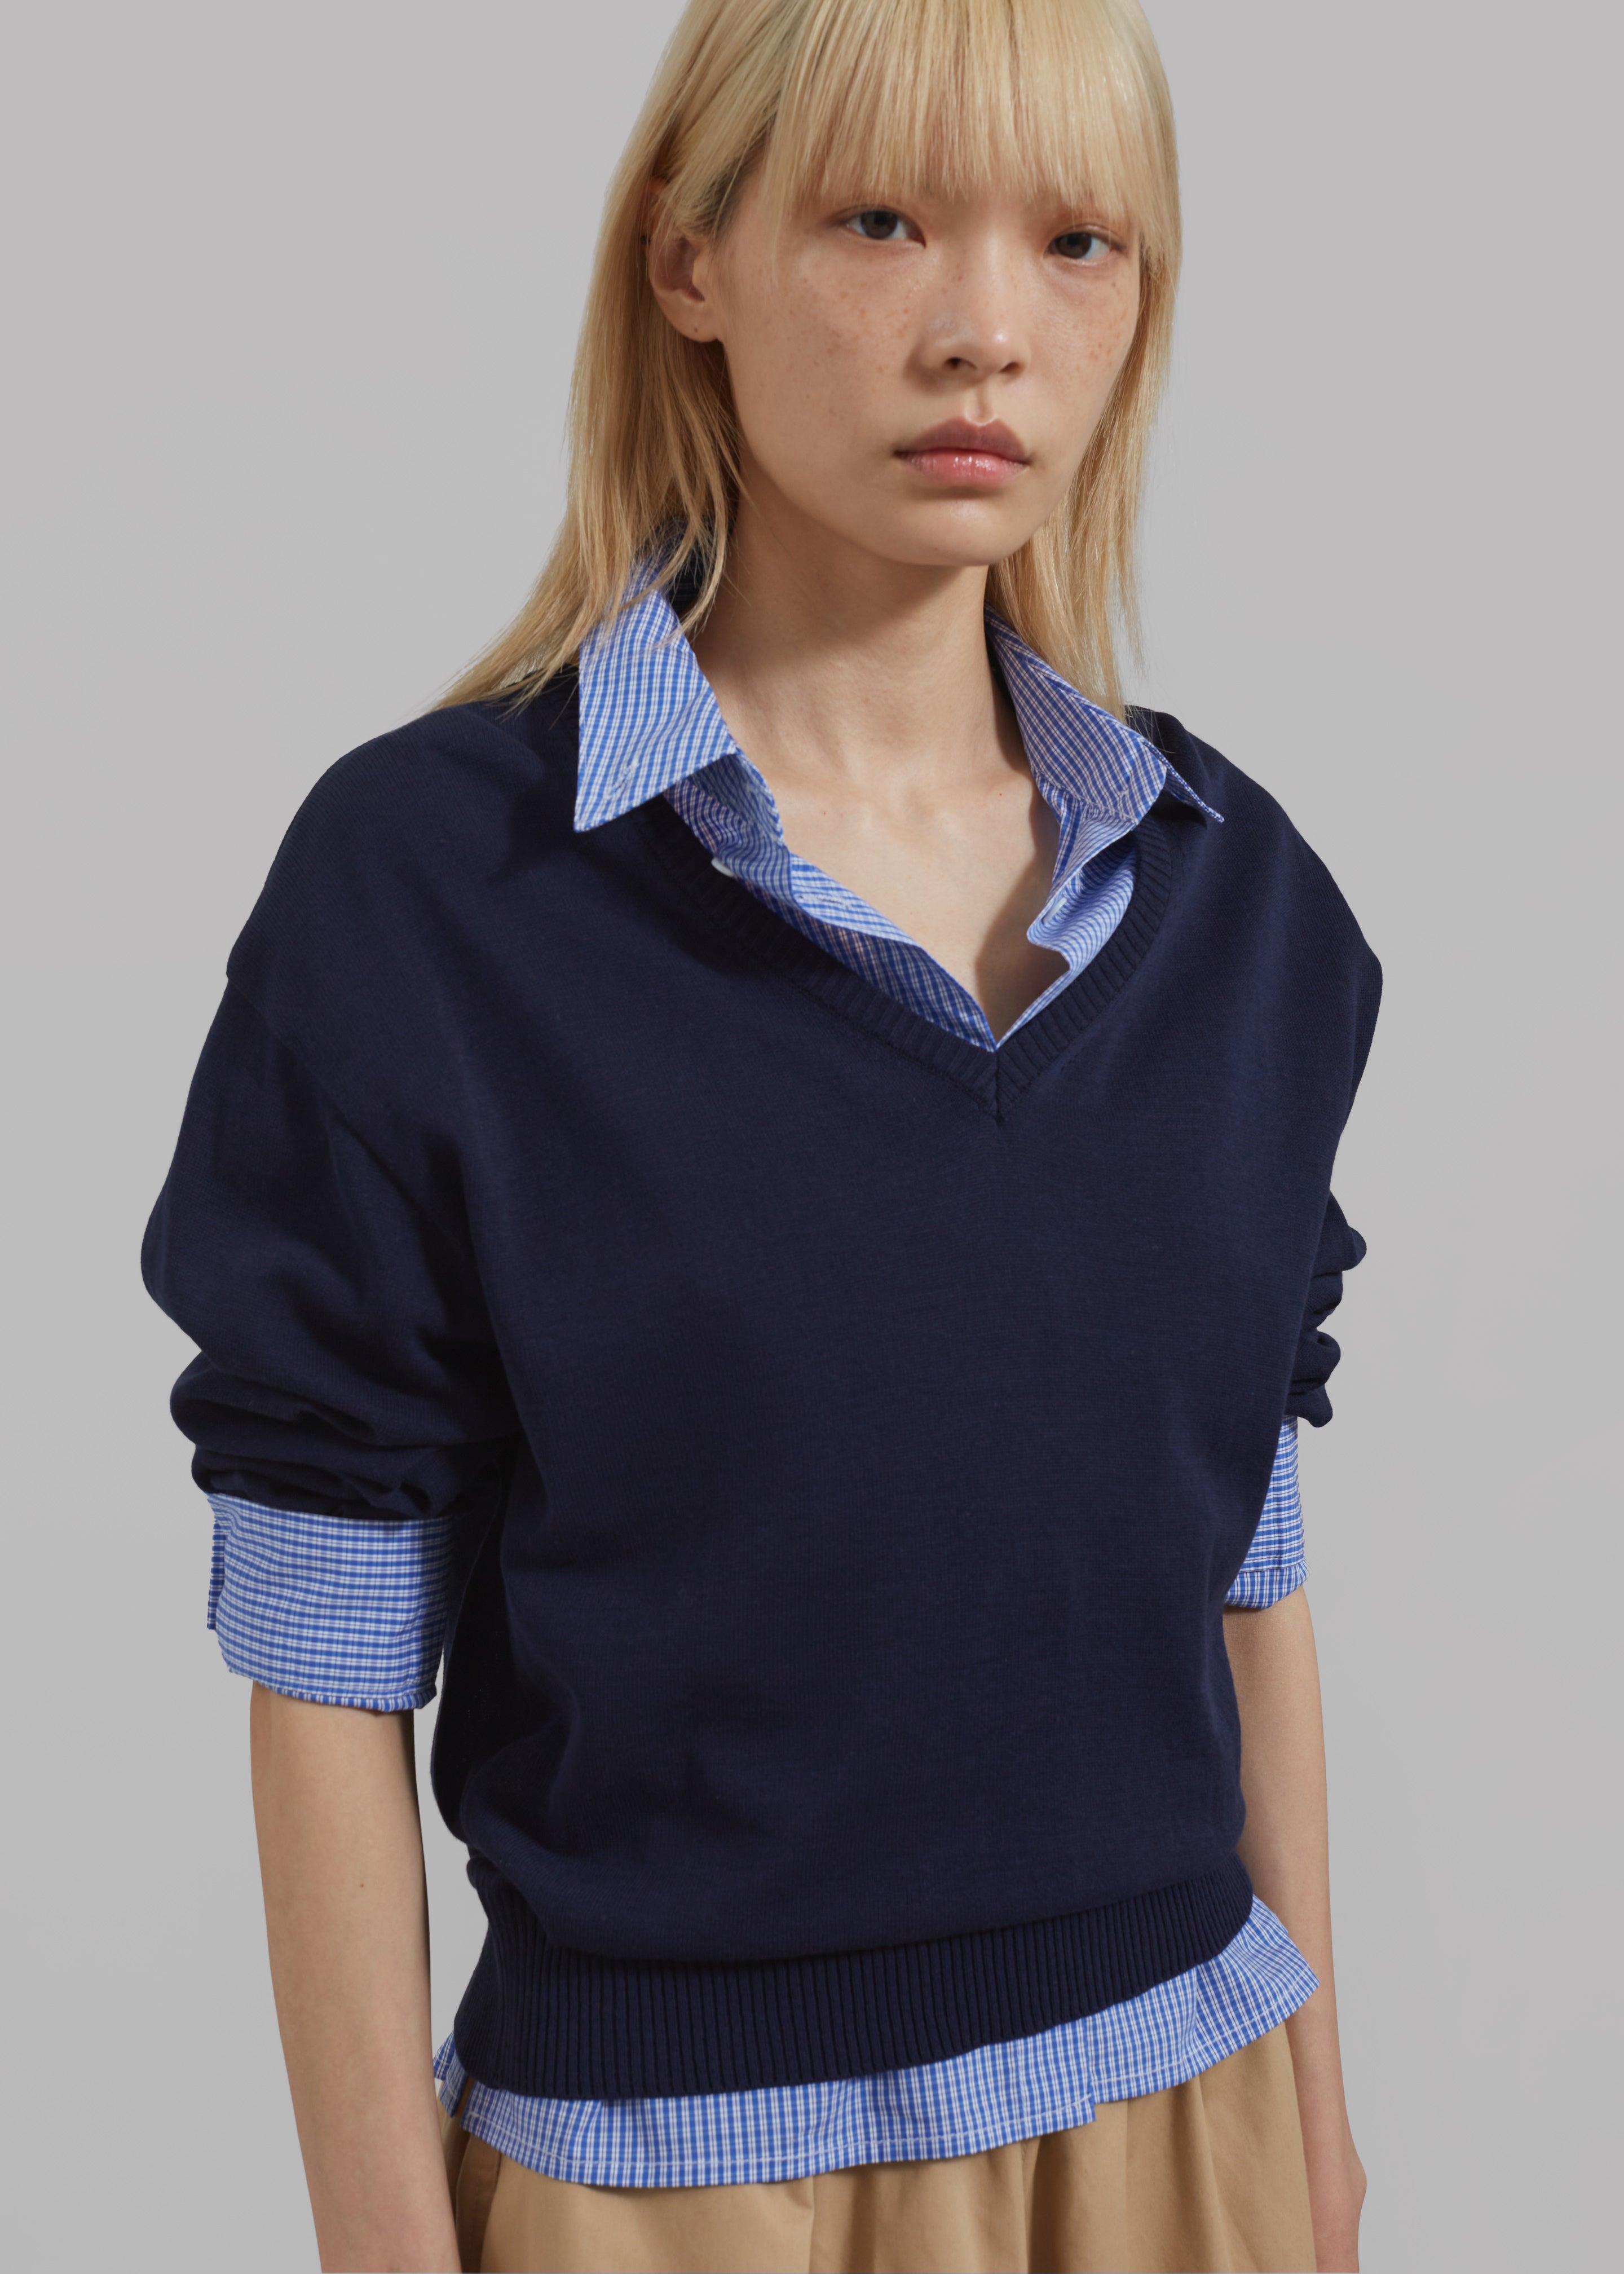 Kessa Gingham Button Up Shirt - Blue - 2